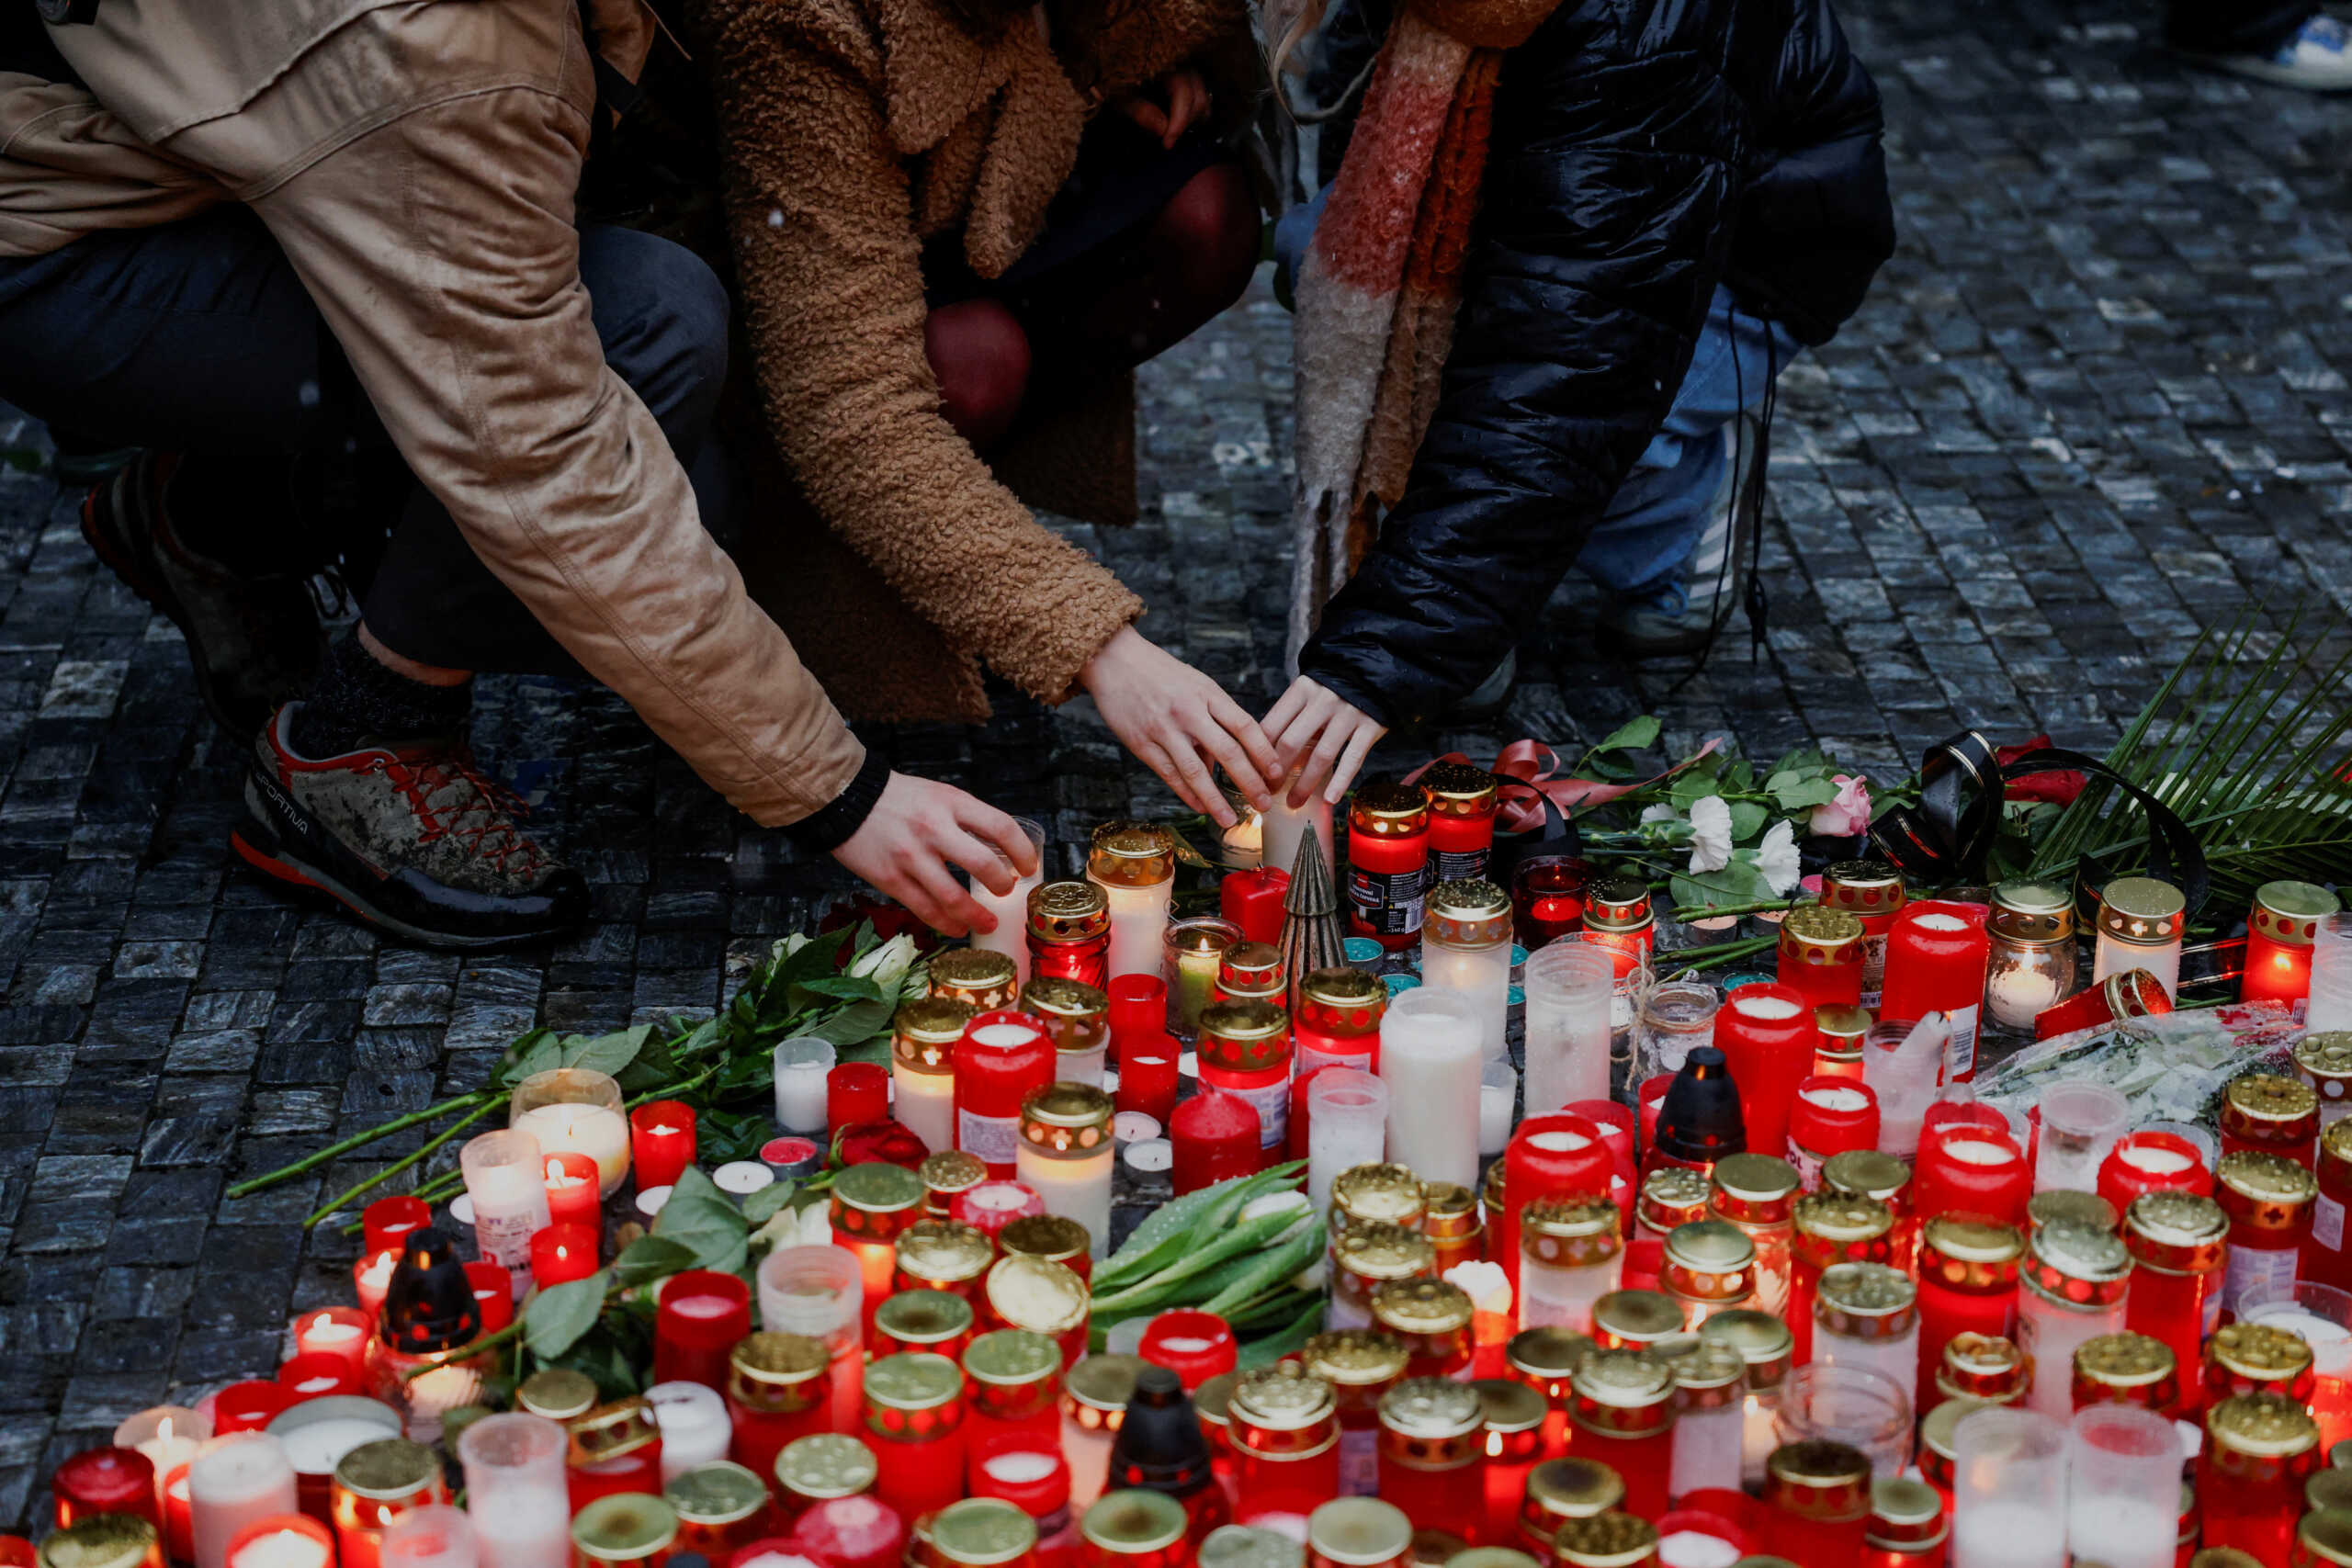 Πράγα: Κατάσταση συναγερμού και περιπολίες παντού – Και η διευθύντρια του Ινστιτούτο Μουσικής του Πανεπιστημίου ανάμεσα στα θύματα